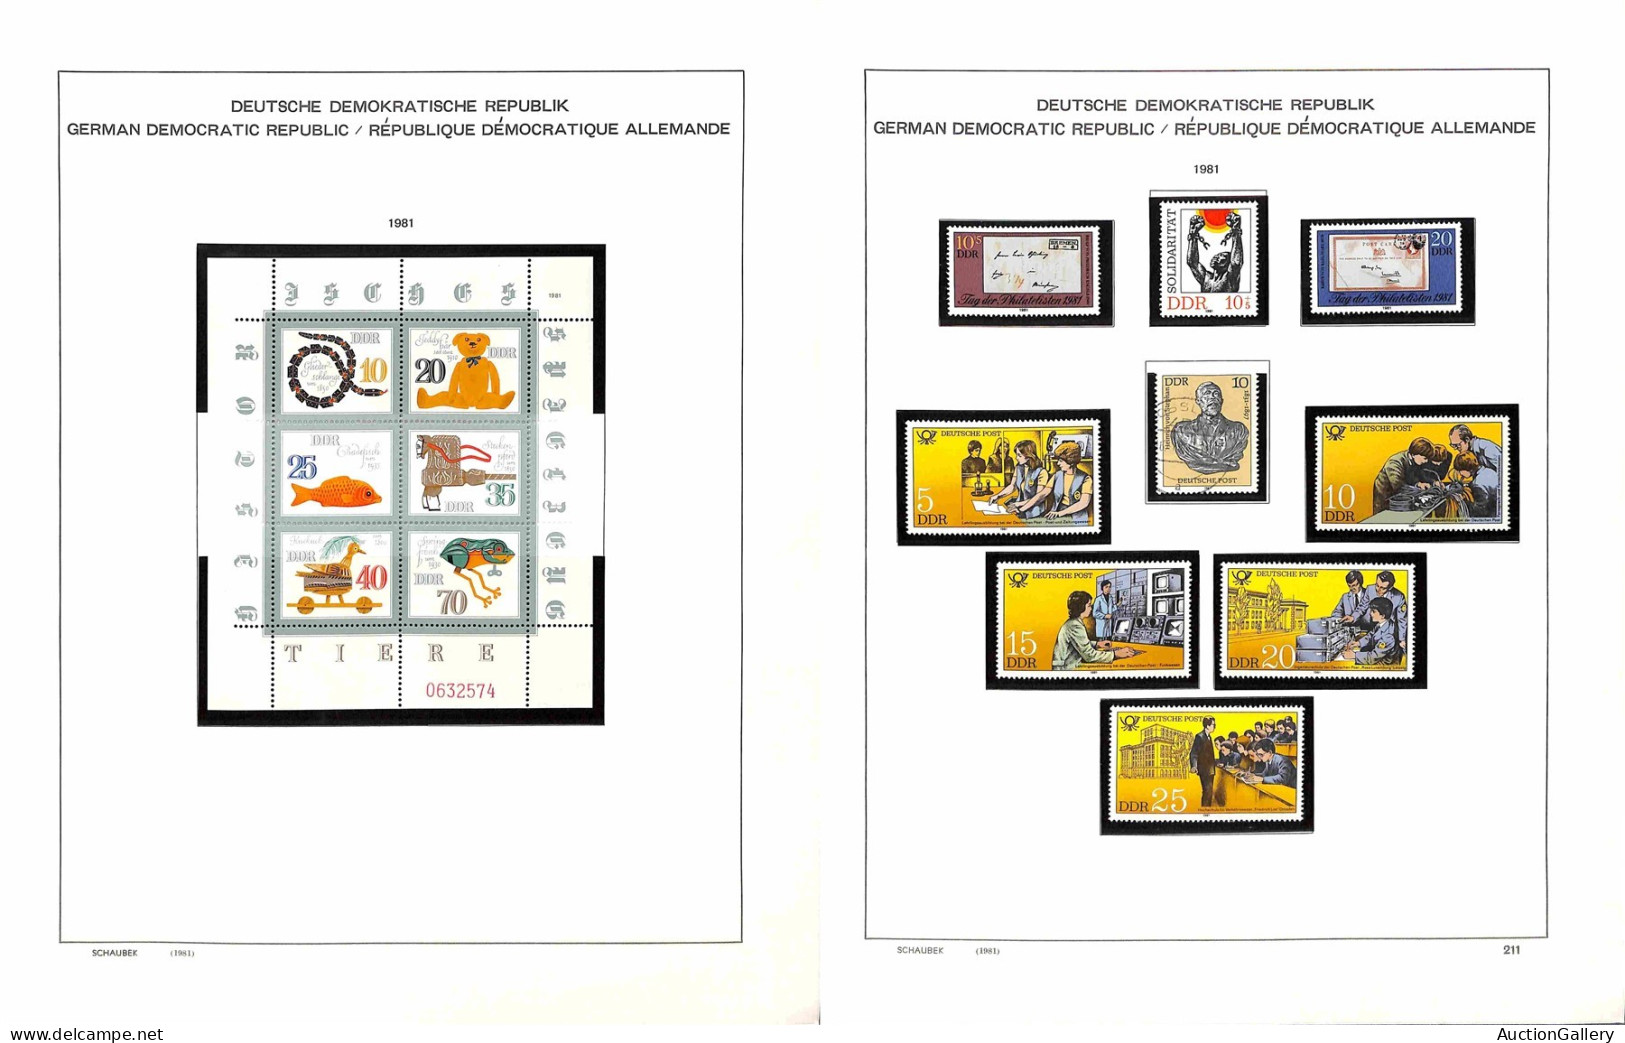 Lotti&Collezioni - Europa&Oltremare - GERMANIA DDR - 1980/1990 - Inizio di collezione mista (con presenze di valori nuov